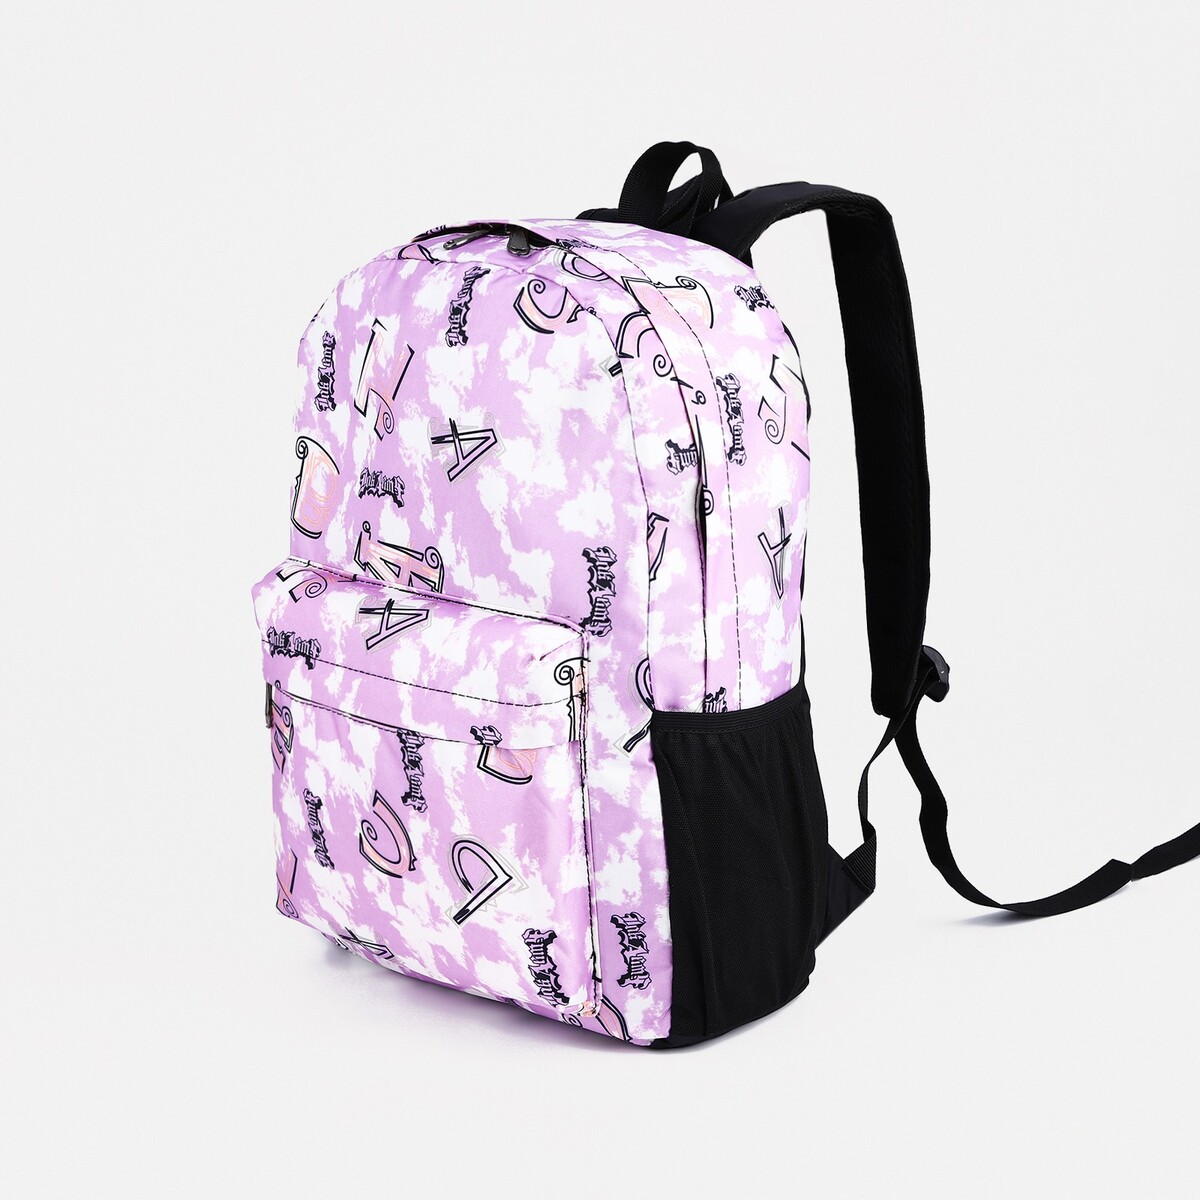 Рюкзак школьный из текстиля на молнии, 3 кармана, цвет фиолетовый кошелек на молнии фиолетовый